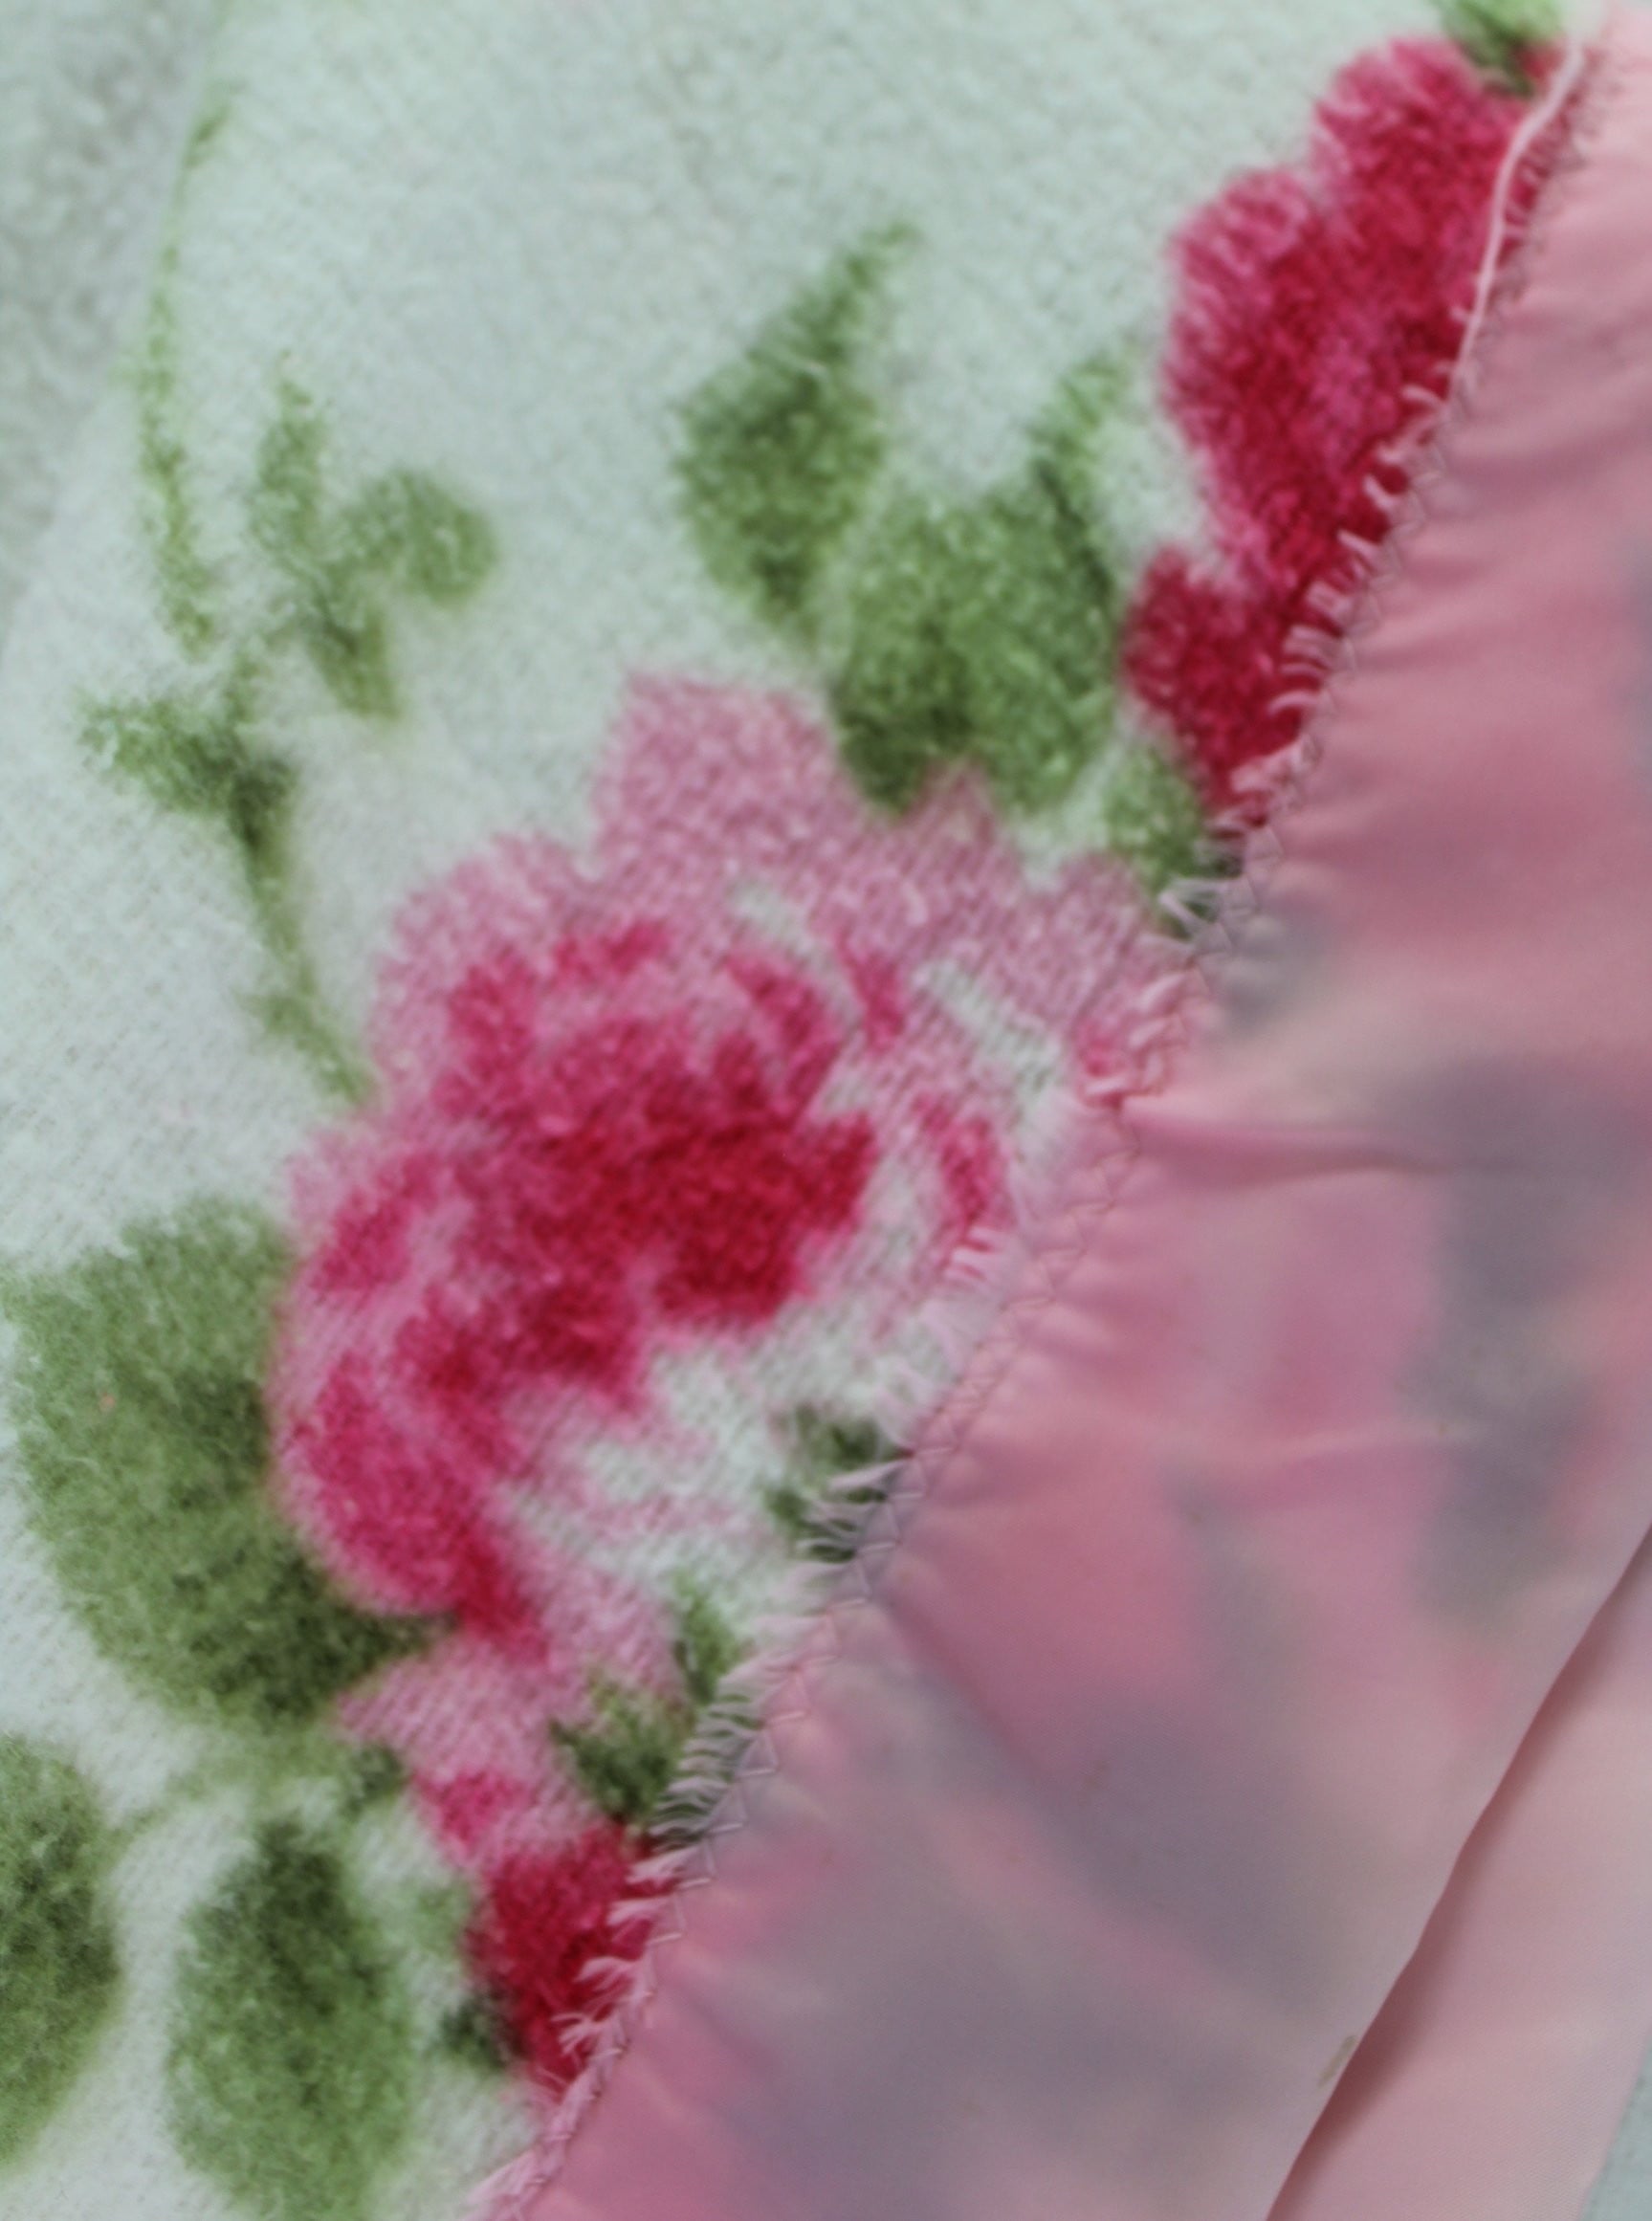 Unbranded Poly Blend Blanket - White Pink Flowers Vintage Cabin Chic 70" X 84" cottage blanket